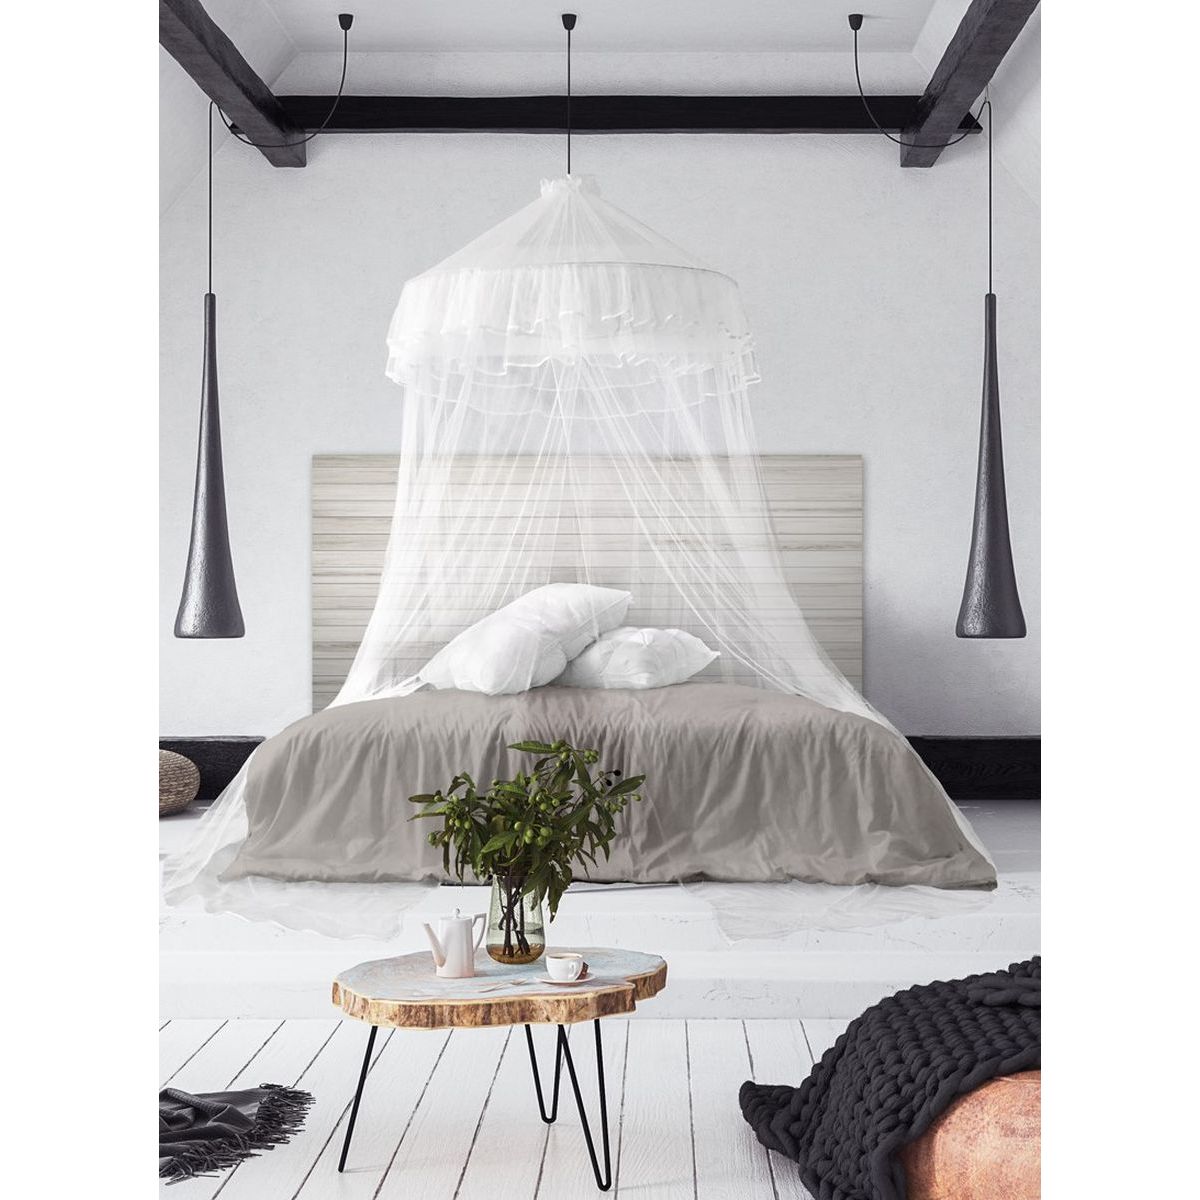 Ciel de lit moustiquaire 2 personnes Ø60 cm x 2,50 m blanc